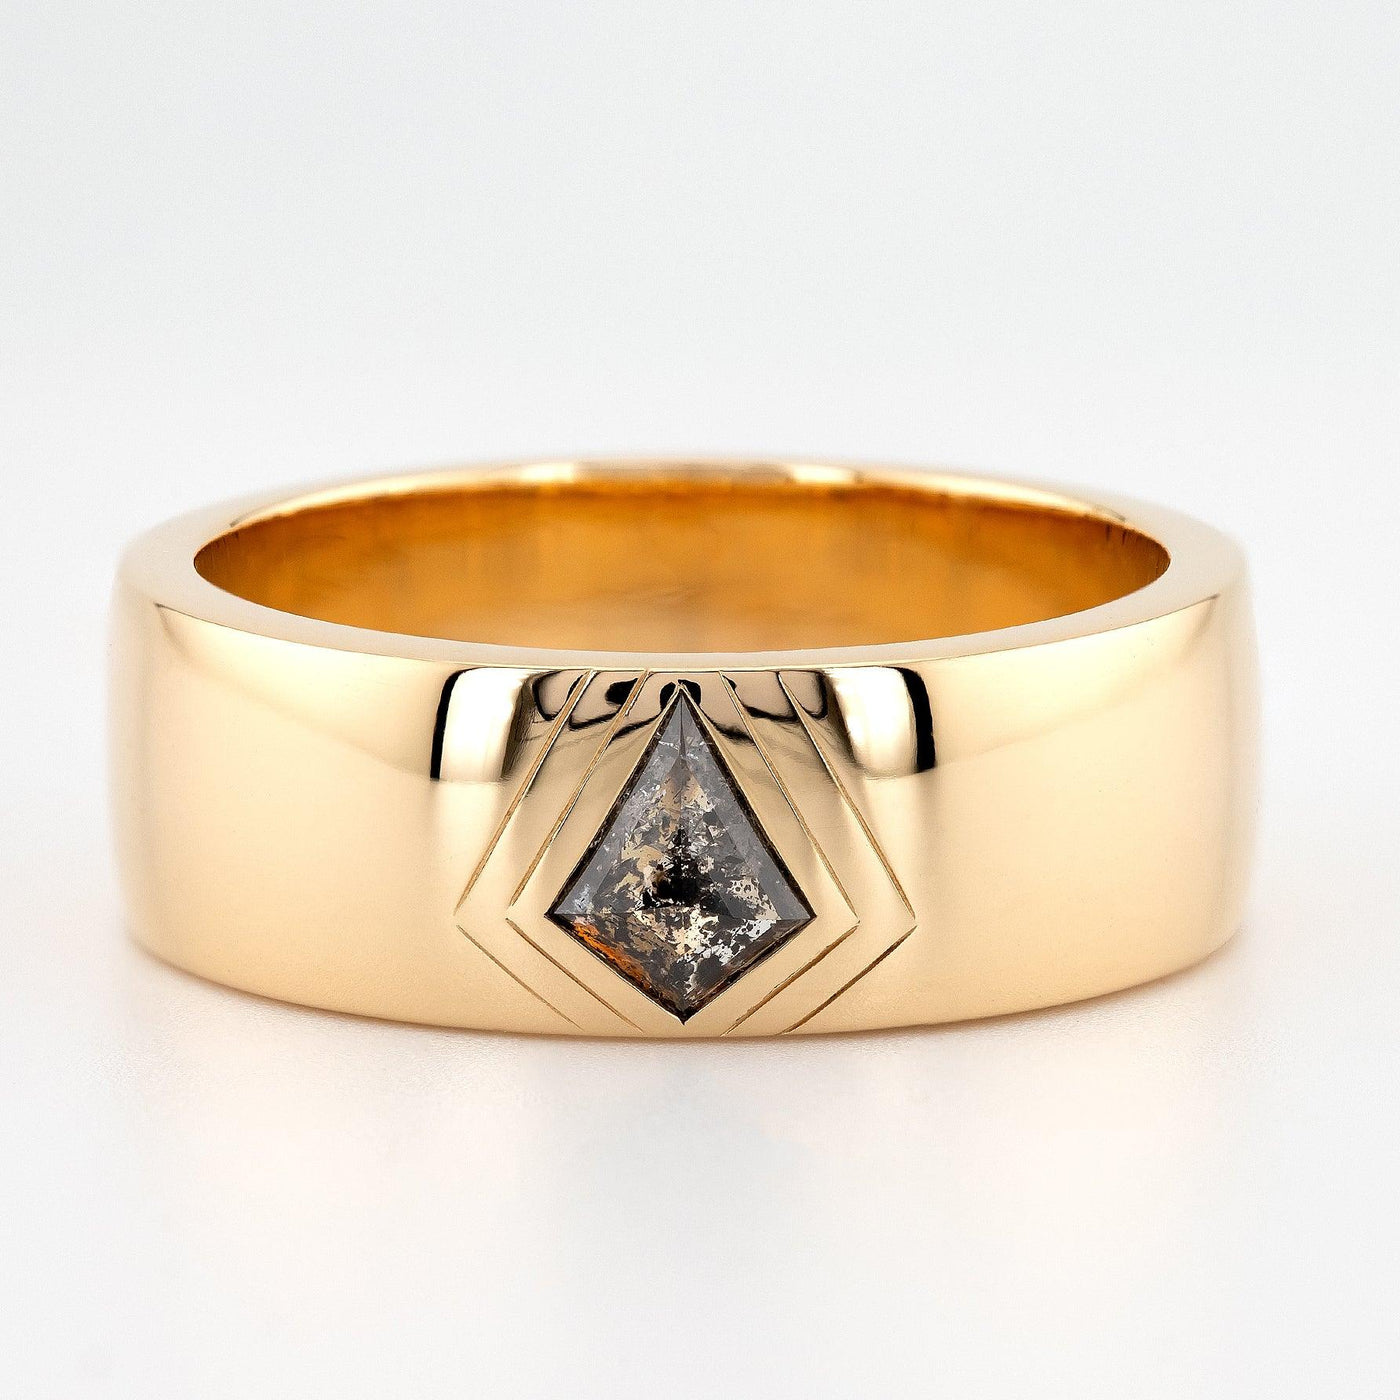 Salt and Pepper diamond Ring | Engagement Ring | Men's Ring | Kite Shape